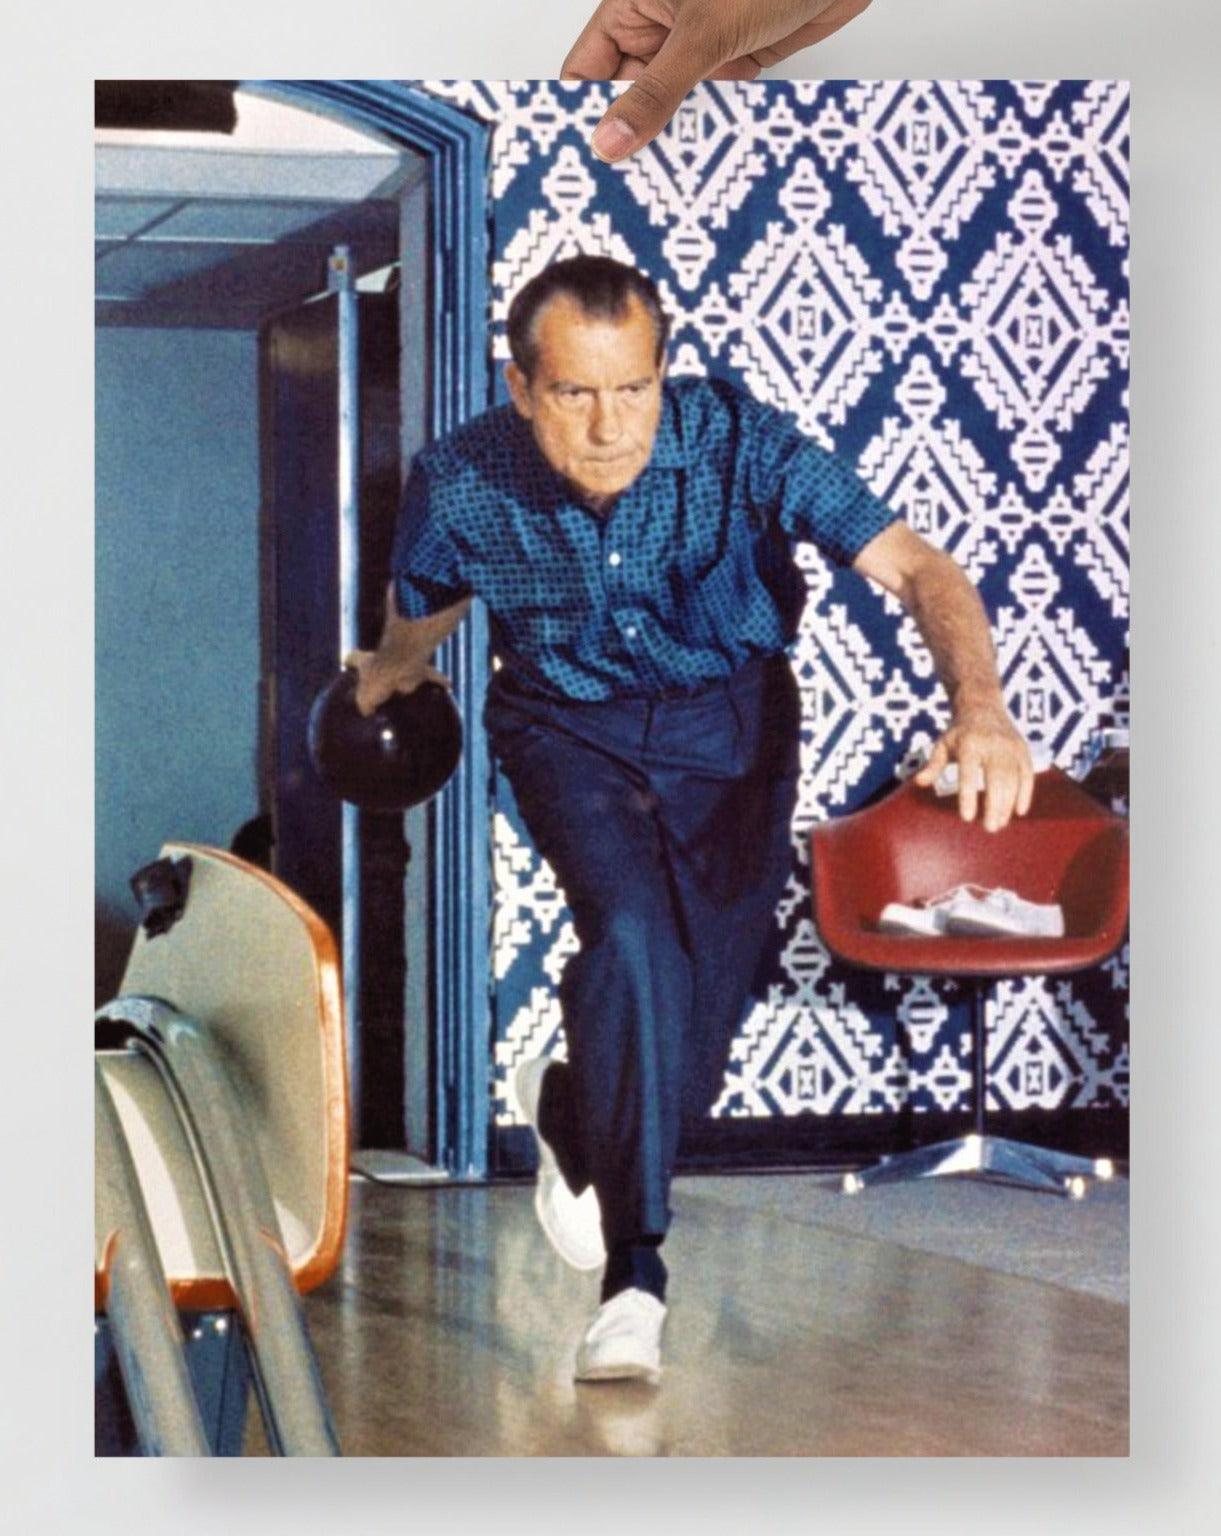 A Richard Nixon Bowling poster on a plain backdrop in size 18x24”.